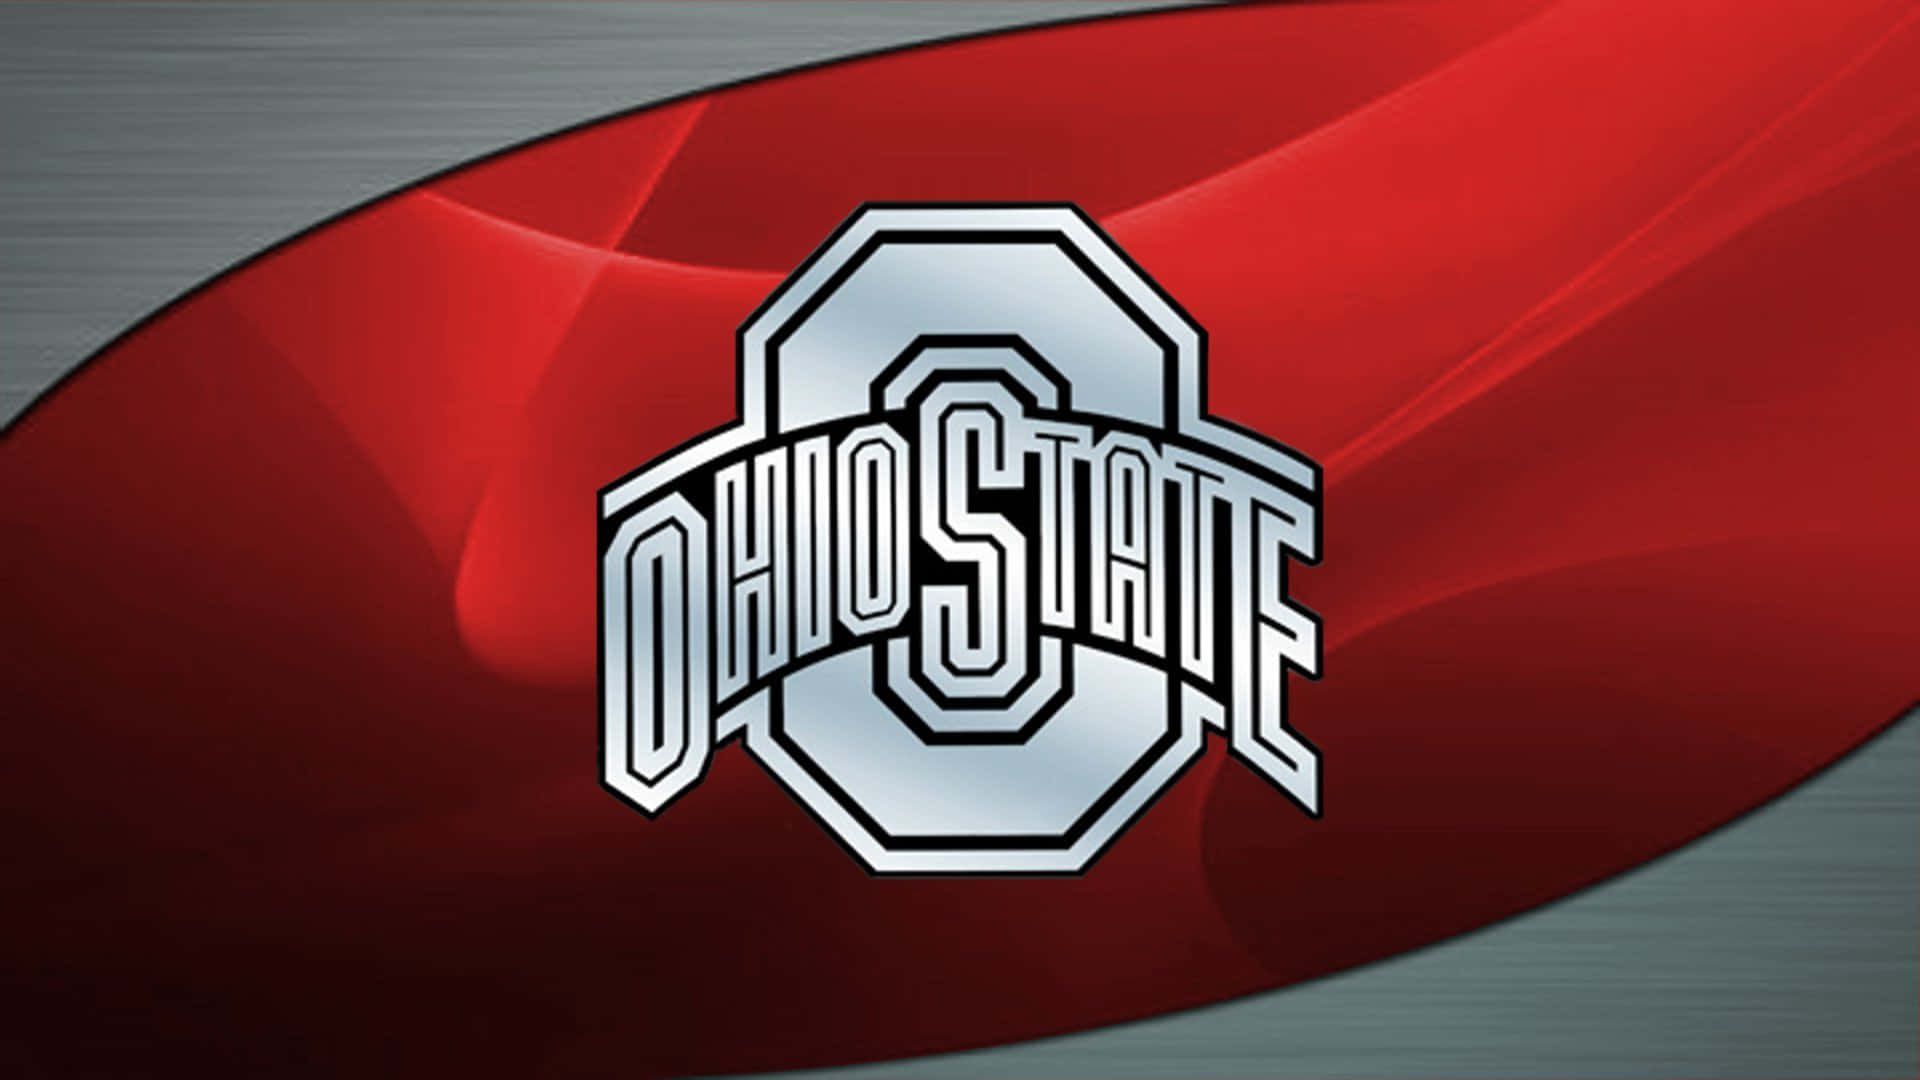 Silver Metallic Ohio State Logo Wallpaper